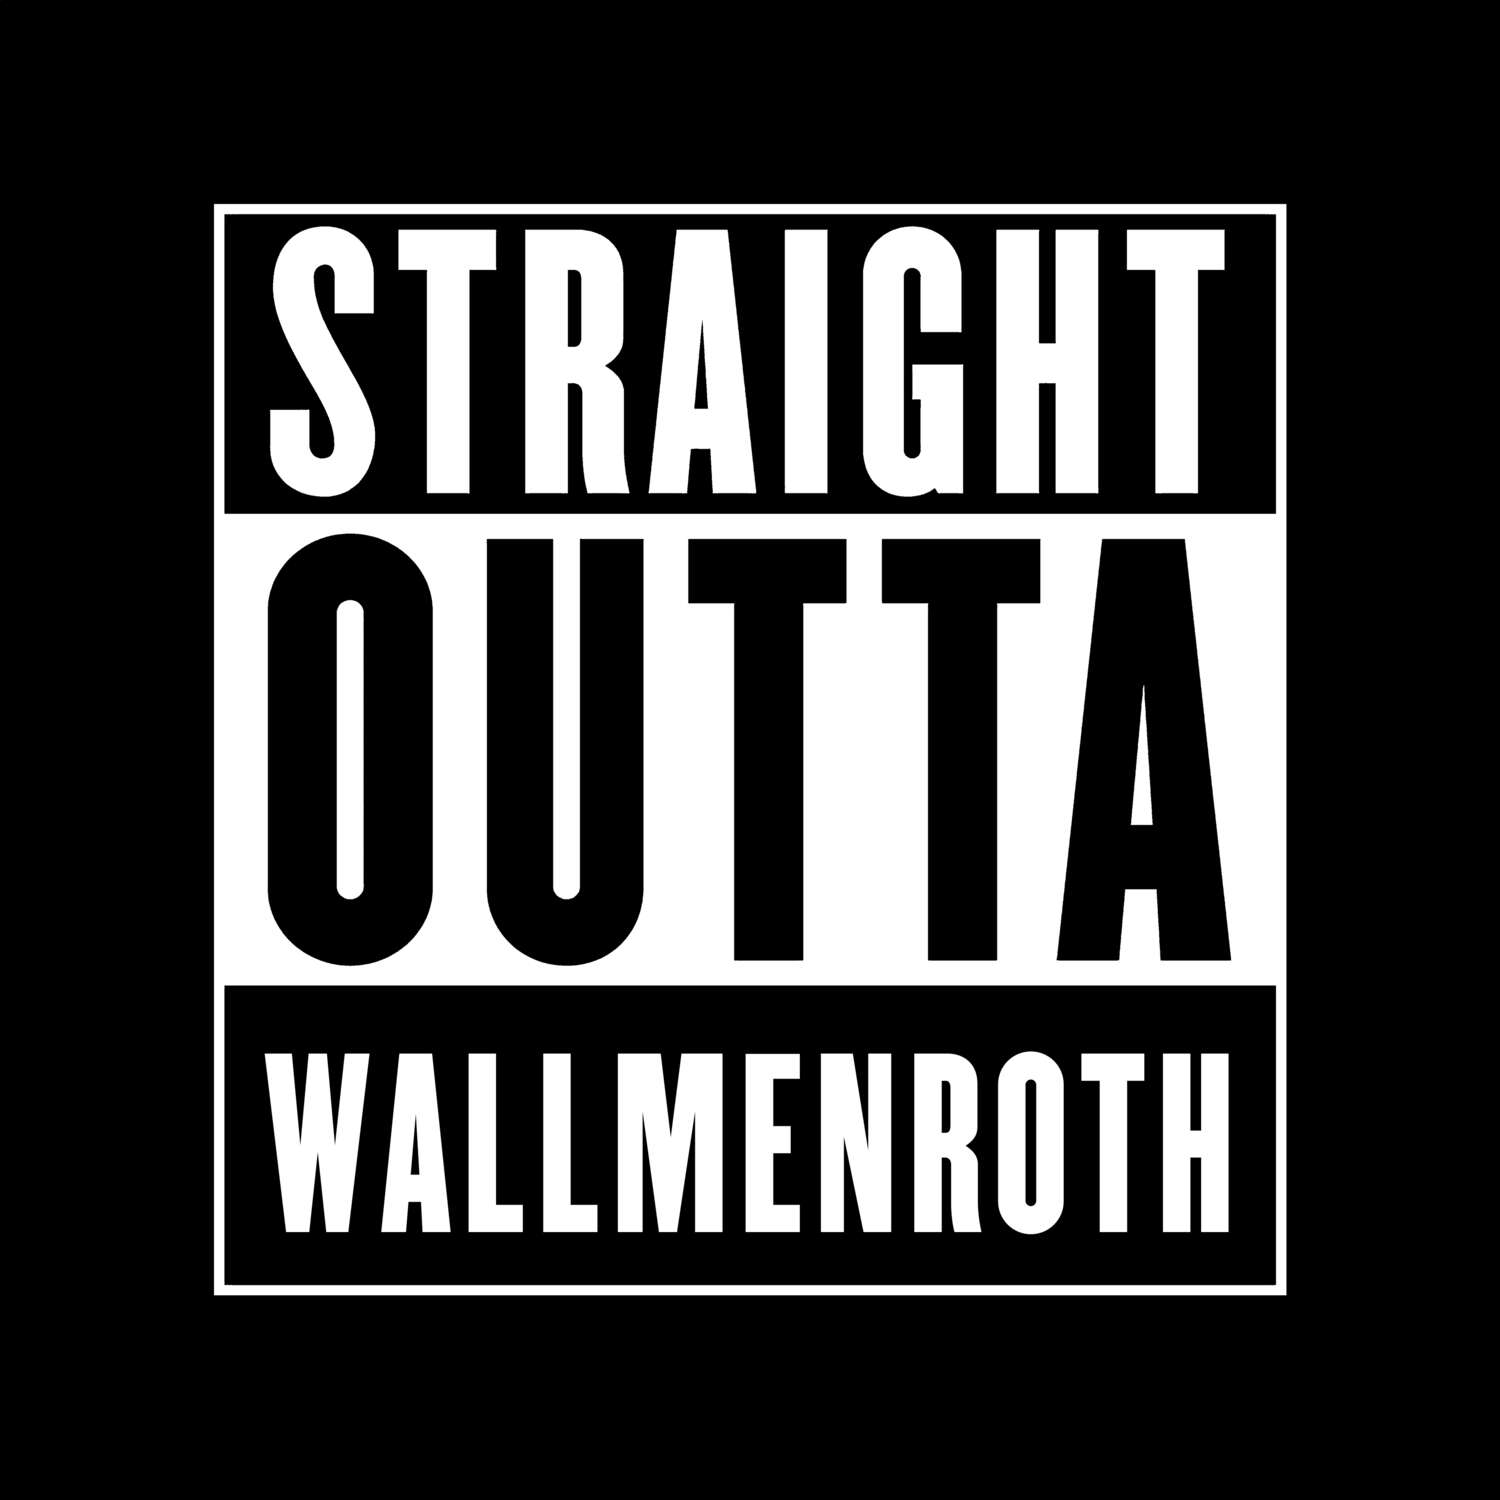 Wallmenroth T-Shirt »Straight Outta«